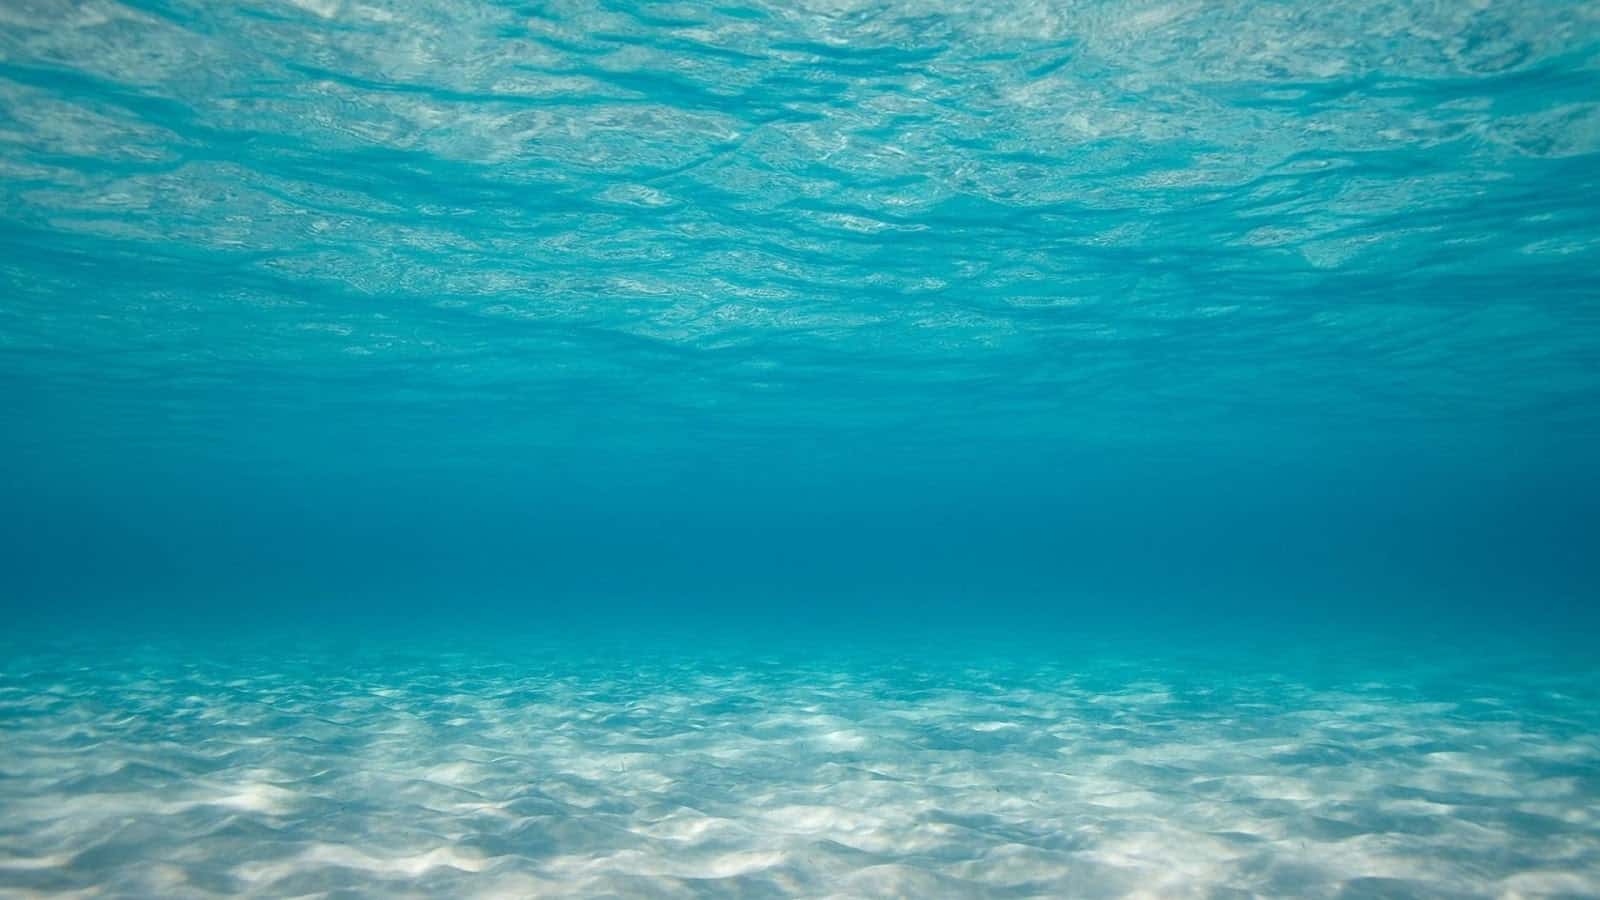 ماذا يوجد في قاع المحيطات؟ مجلة نقطة العلمية